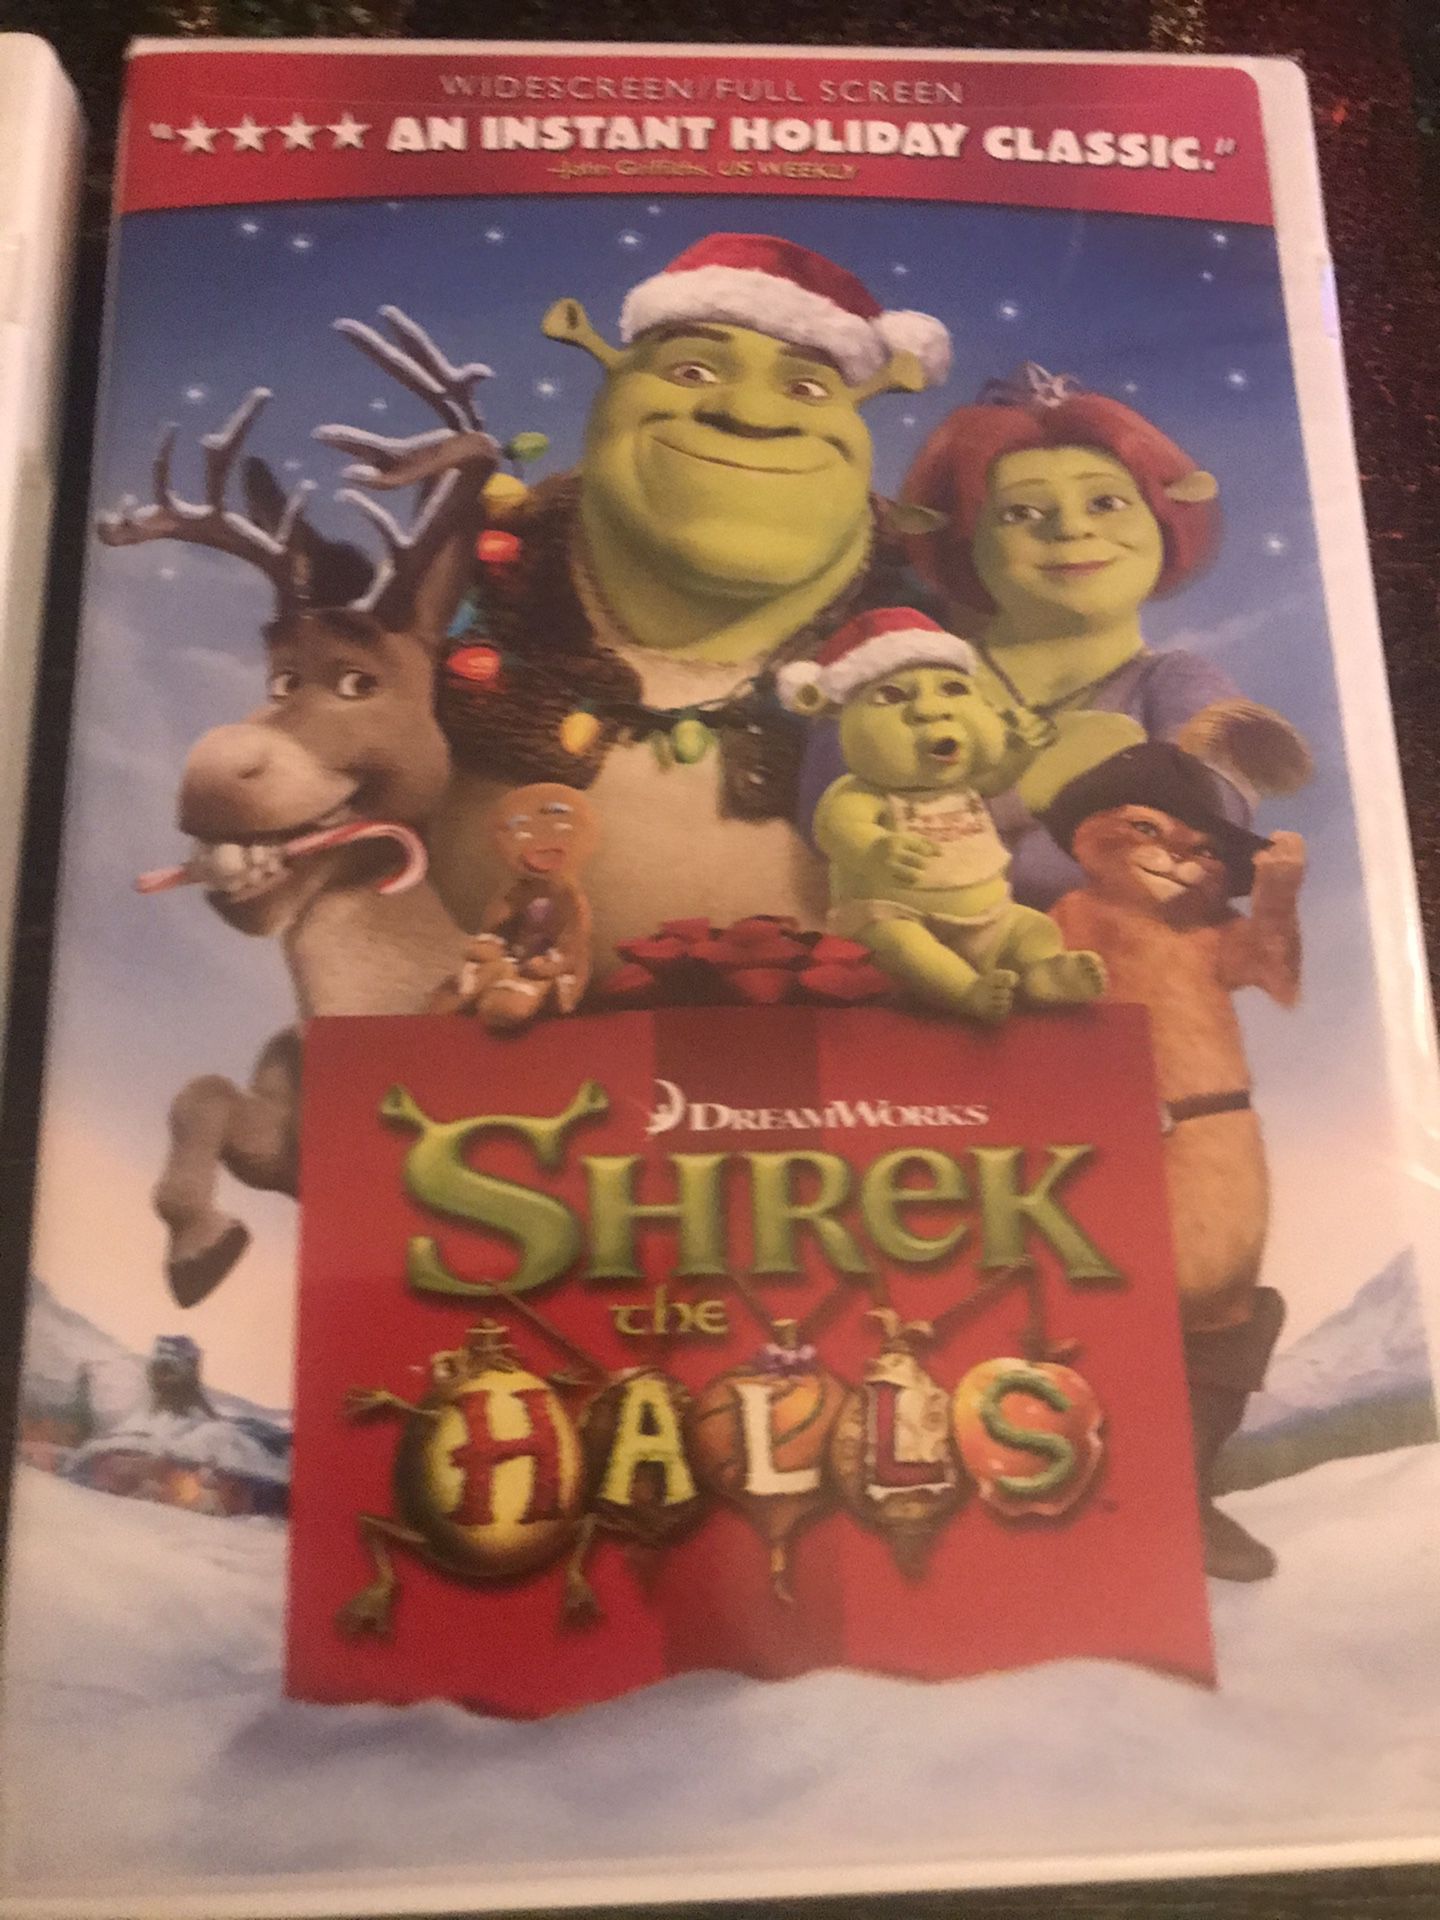 Shrek the Halls, Shrek 3D, Shrek 2 DVDs